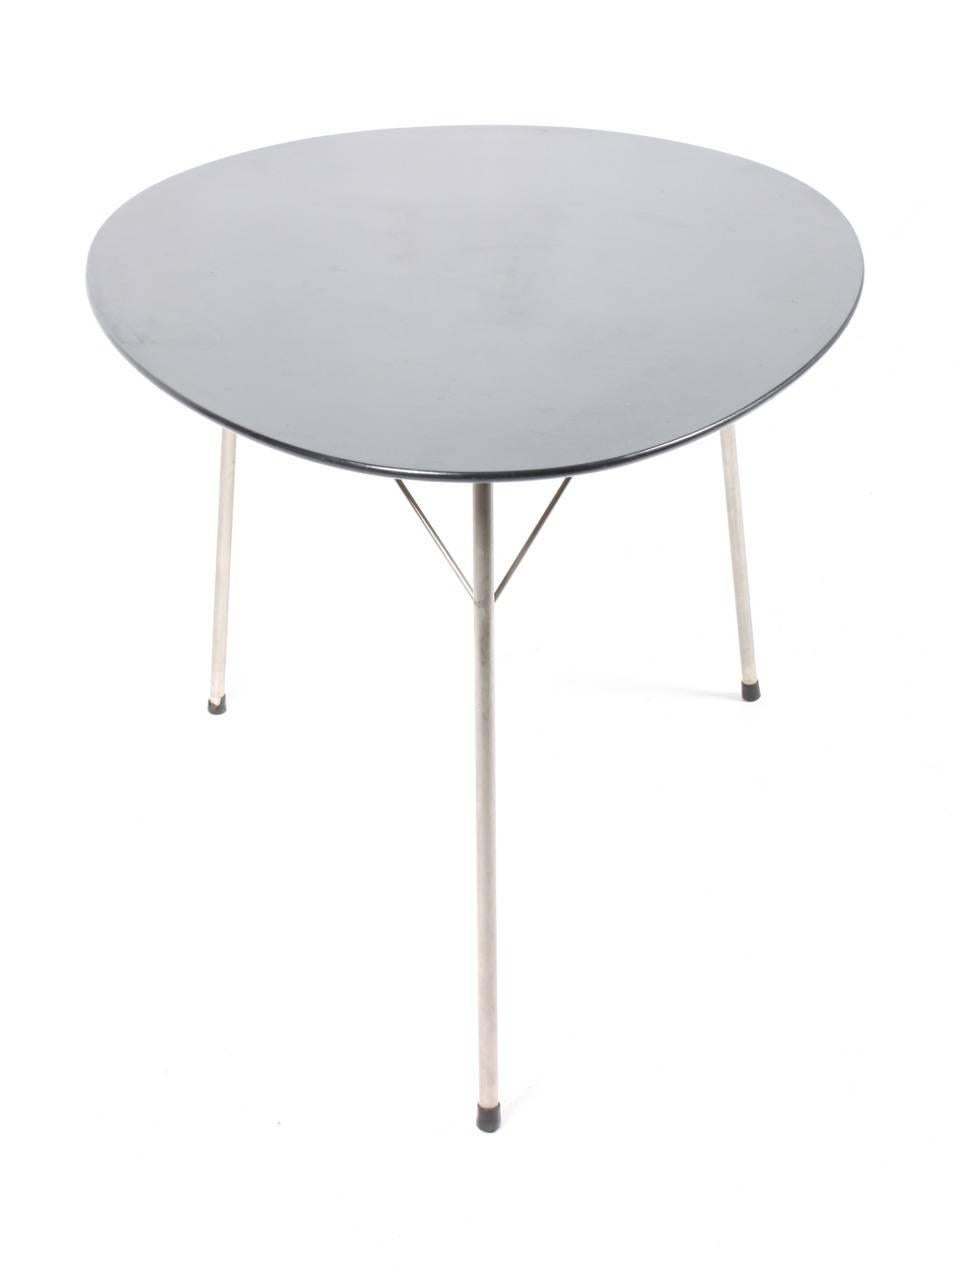 Scandinavian Modern Arne Jacobsen Egg Table